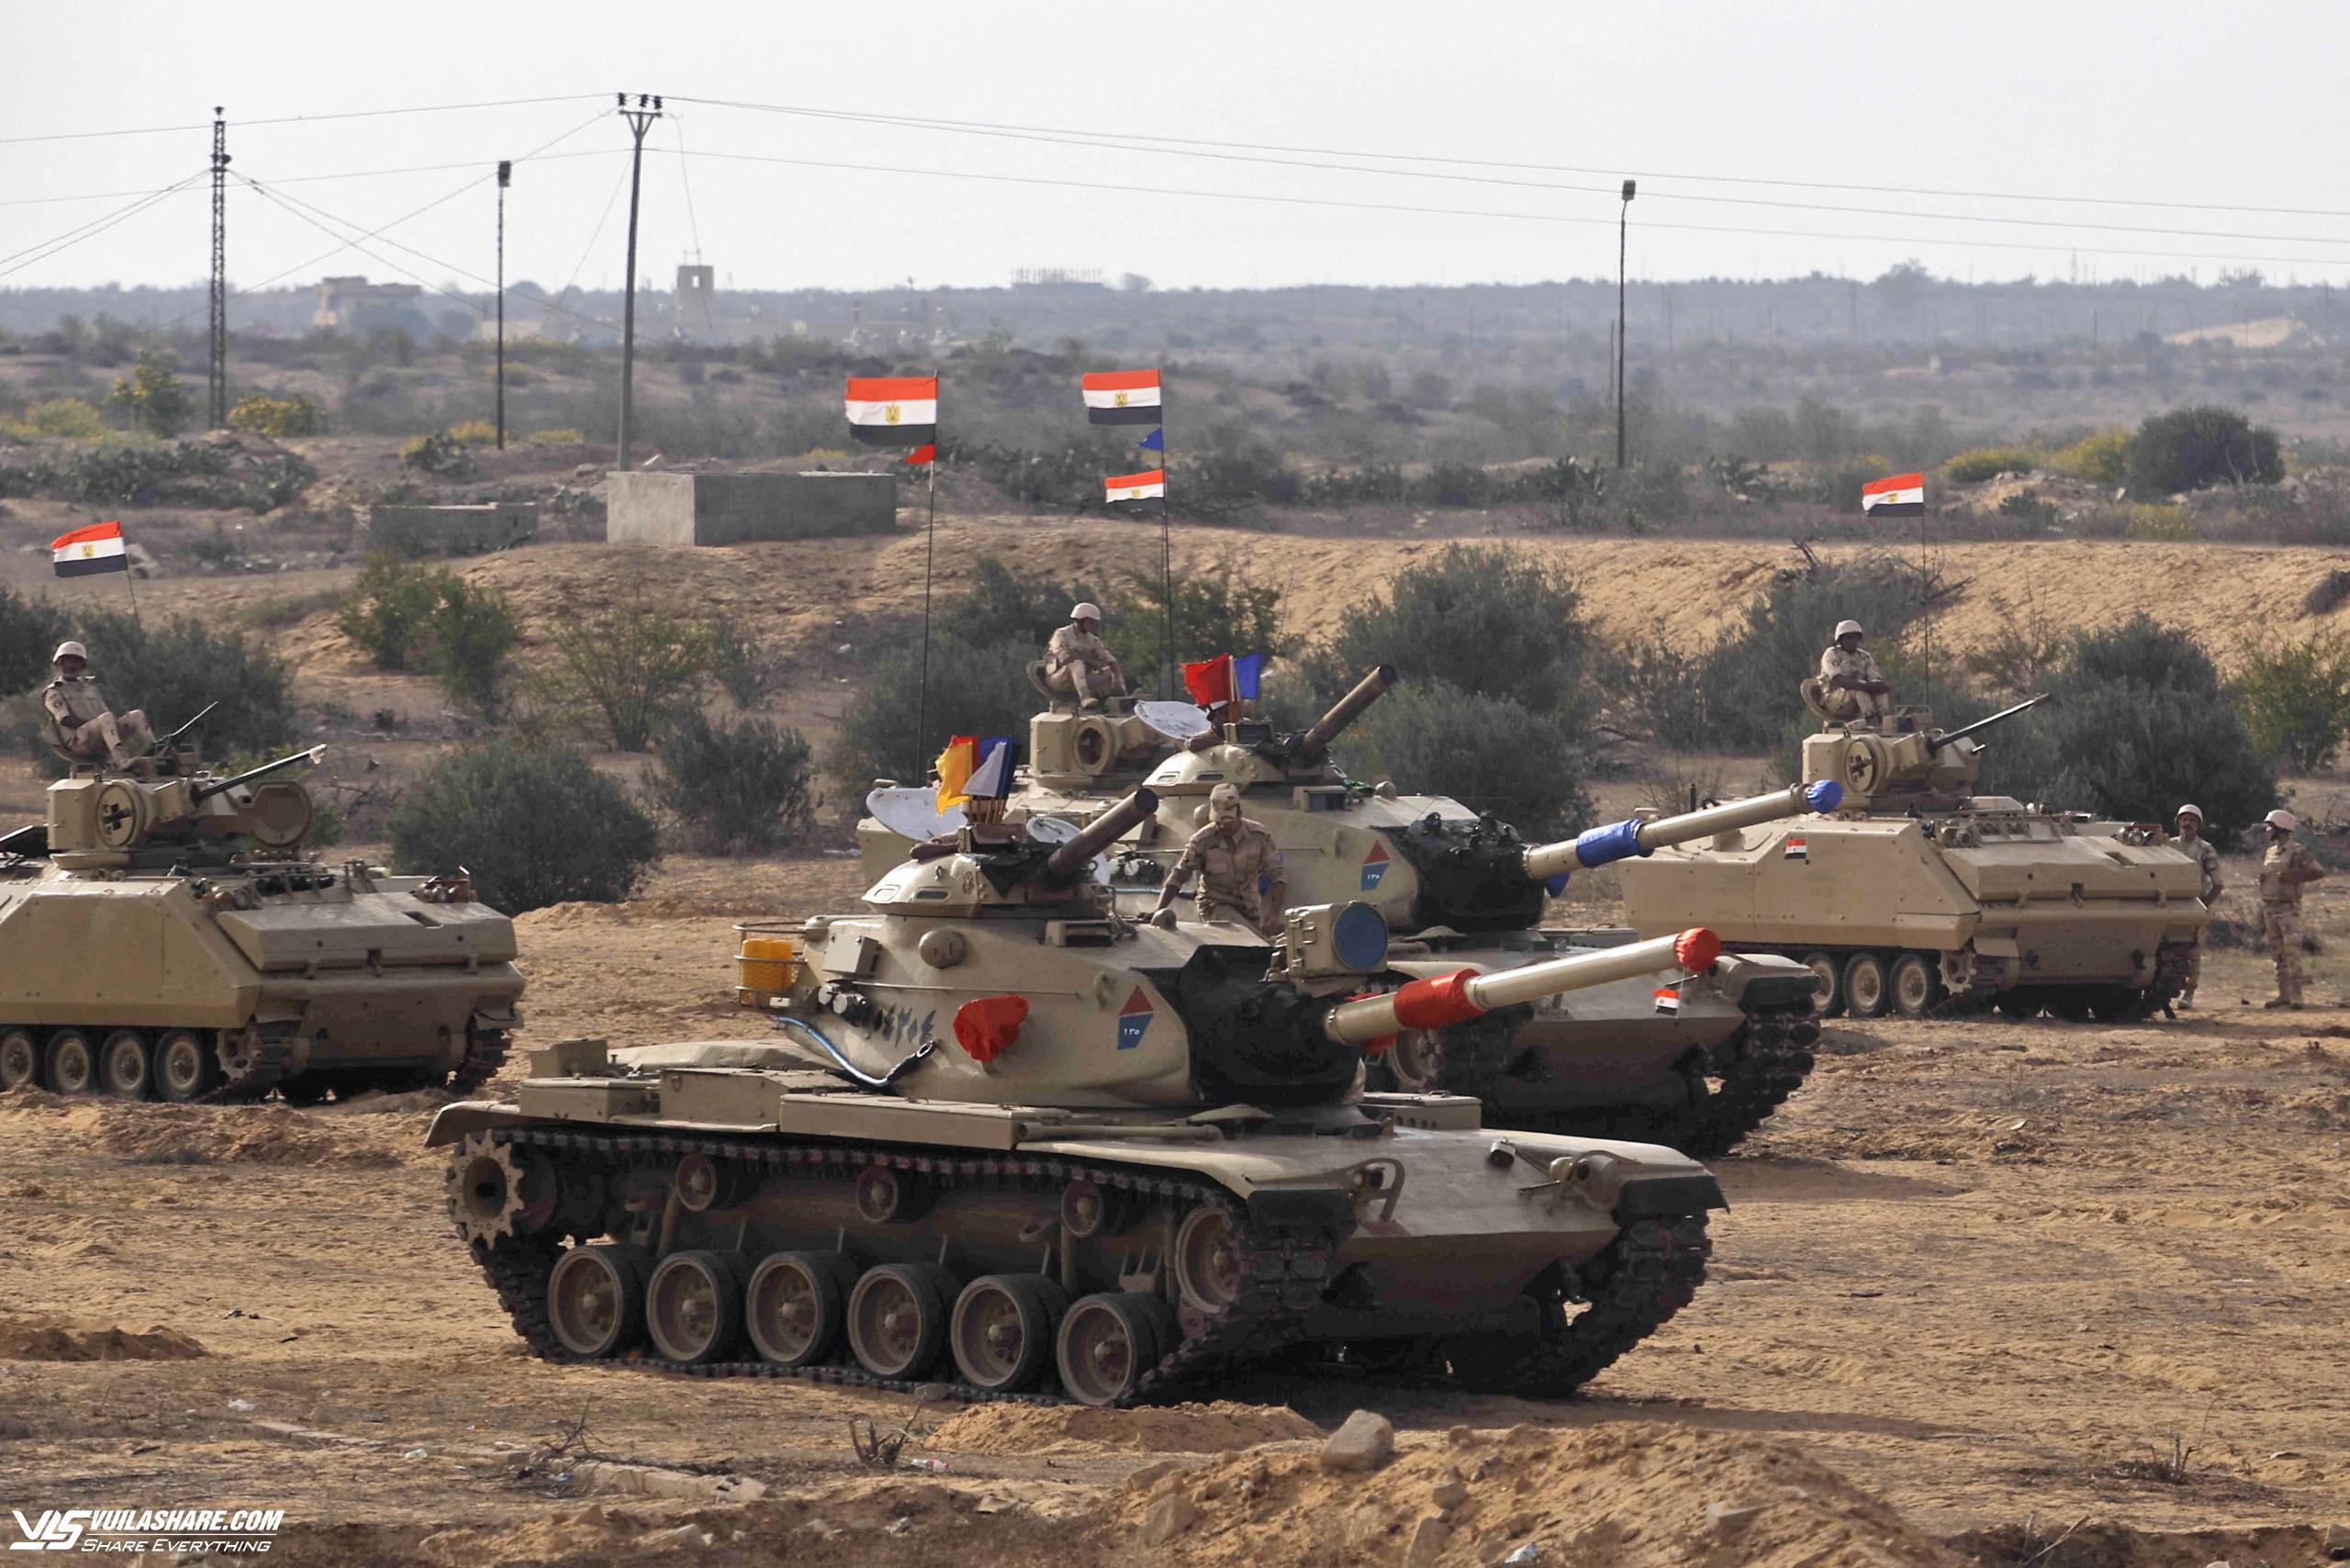 Quân nhân Ai Cập thiệt mạng trong vụ đấu súng với Israel tại Rafah- Ảnh 1.